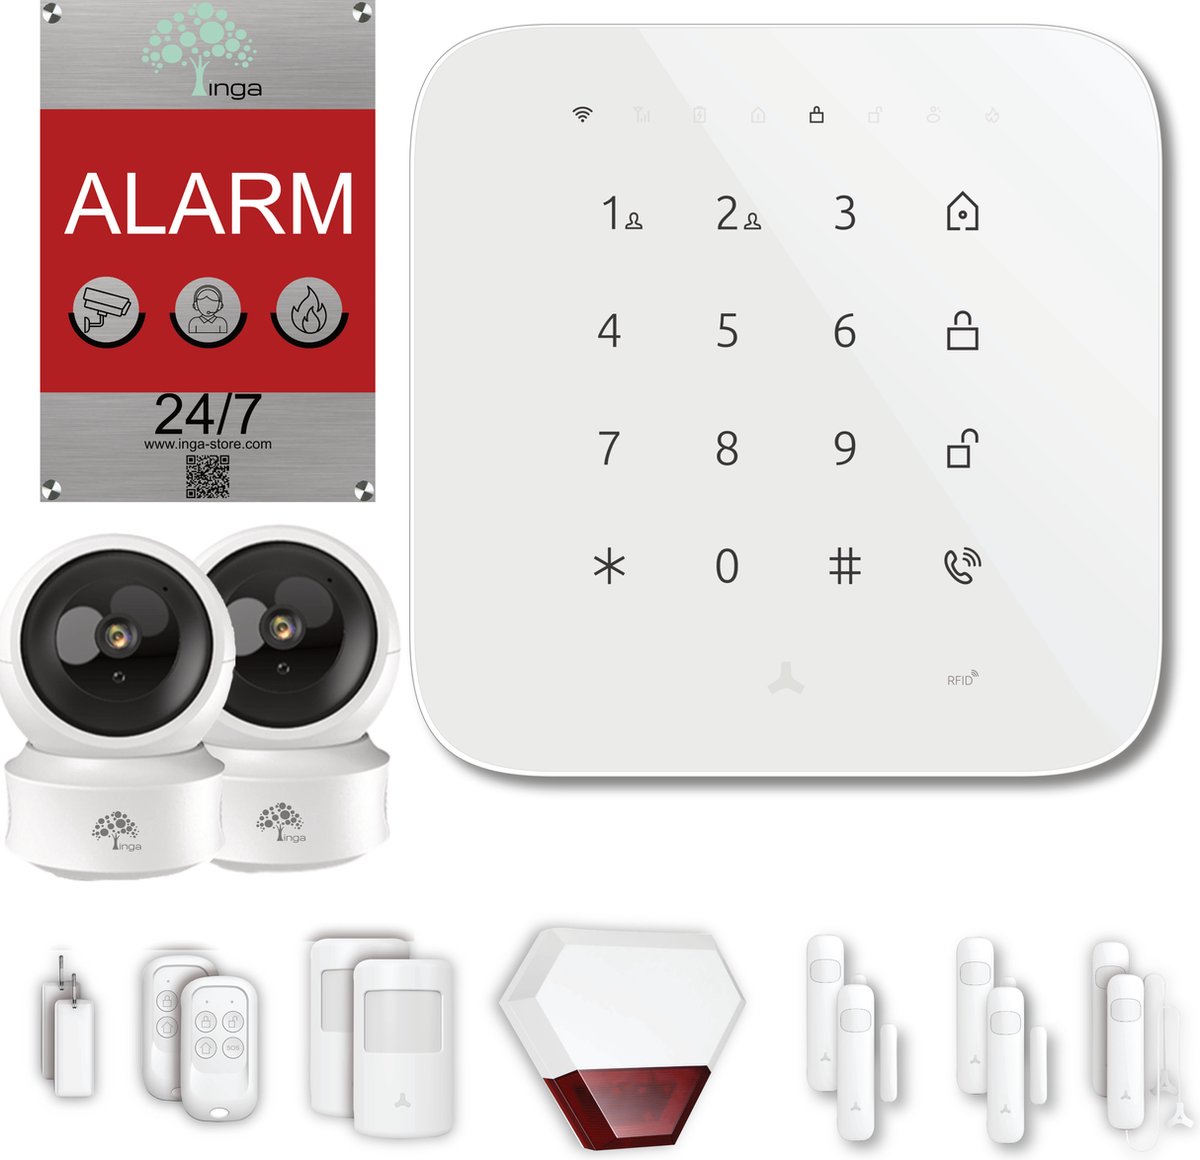 Inga® alarmsysteem Pro+| Draadloos Smart Home Beveiligingssysteem | Beveiligingscamera | buiten sirene | Wifi & GSM | Batterij |App Push & SMS |uitbreidbaar | deur- en raamsensor | bewegingsmelder | afstandsbedieningen | RFID-sleutels |luide sirene